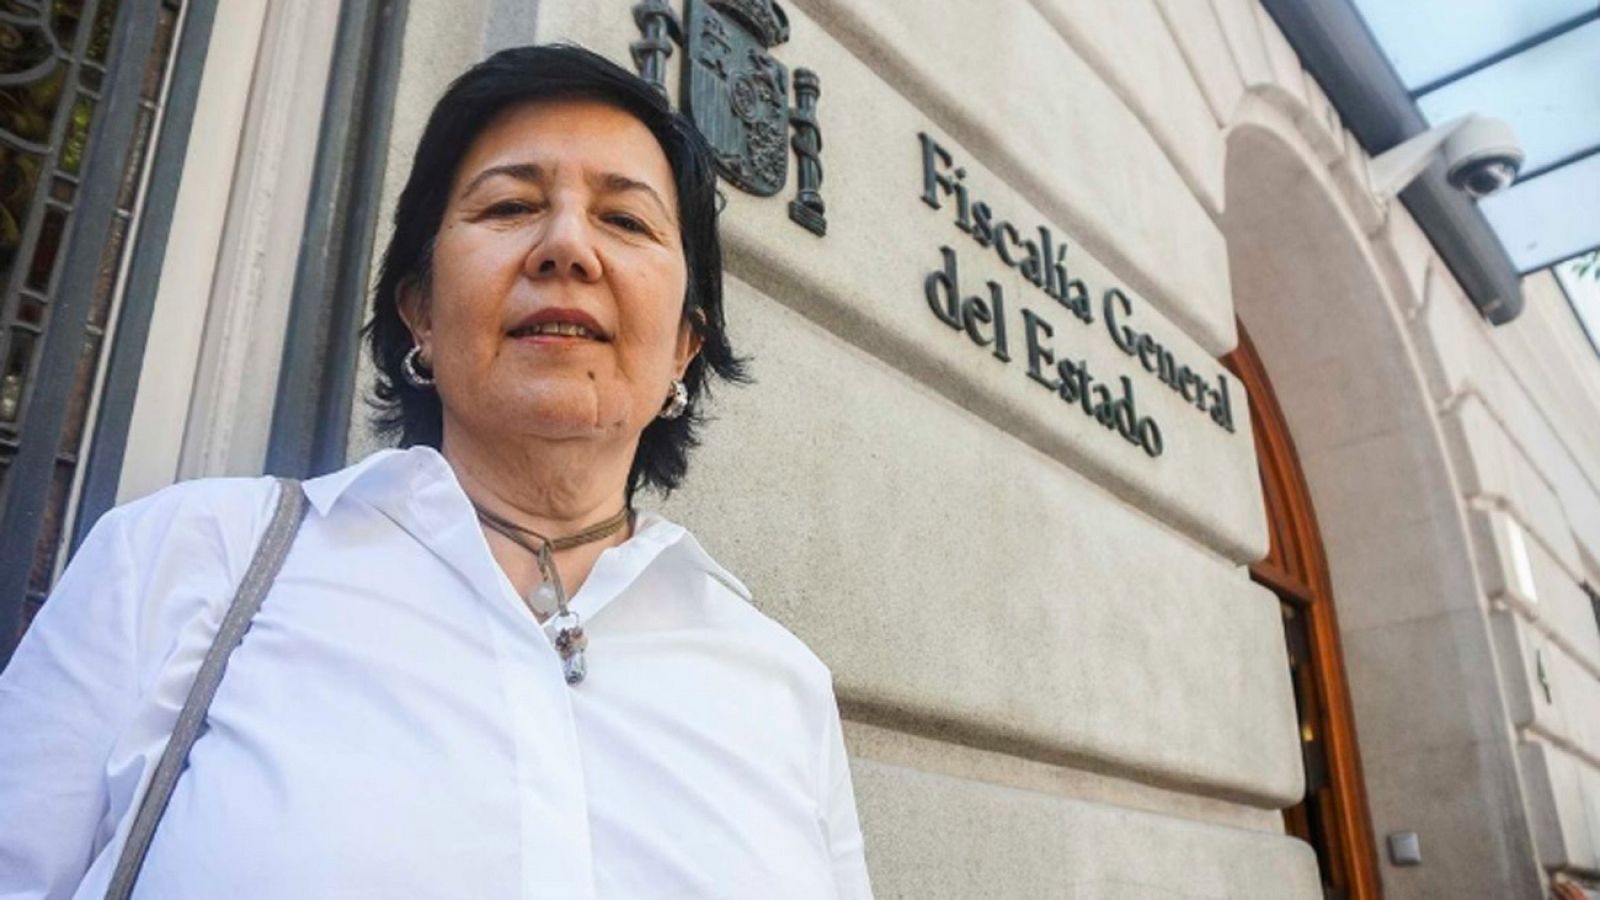  Las mañanas de RNE con Íñigo Alfonso - La Asociación de Fiscales muestra "desagrado" por la propuesta de Delgado como nueva Fiscal General - Escuchar ahora